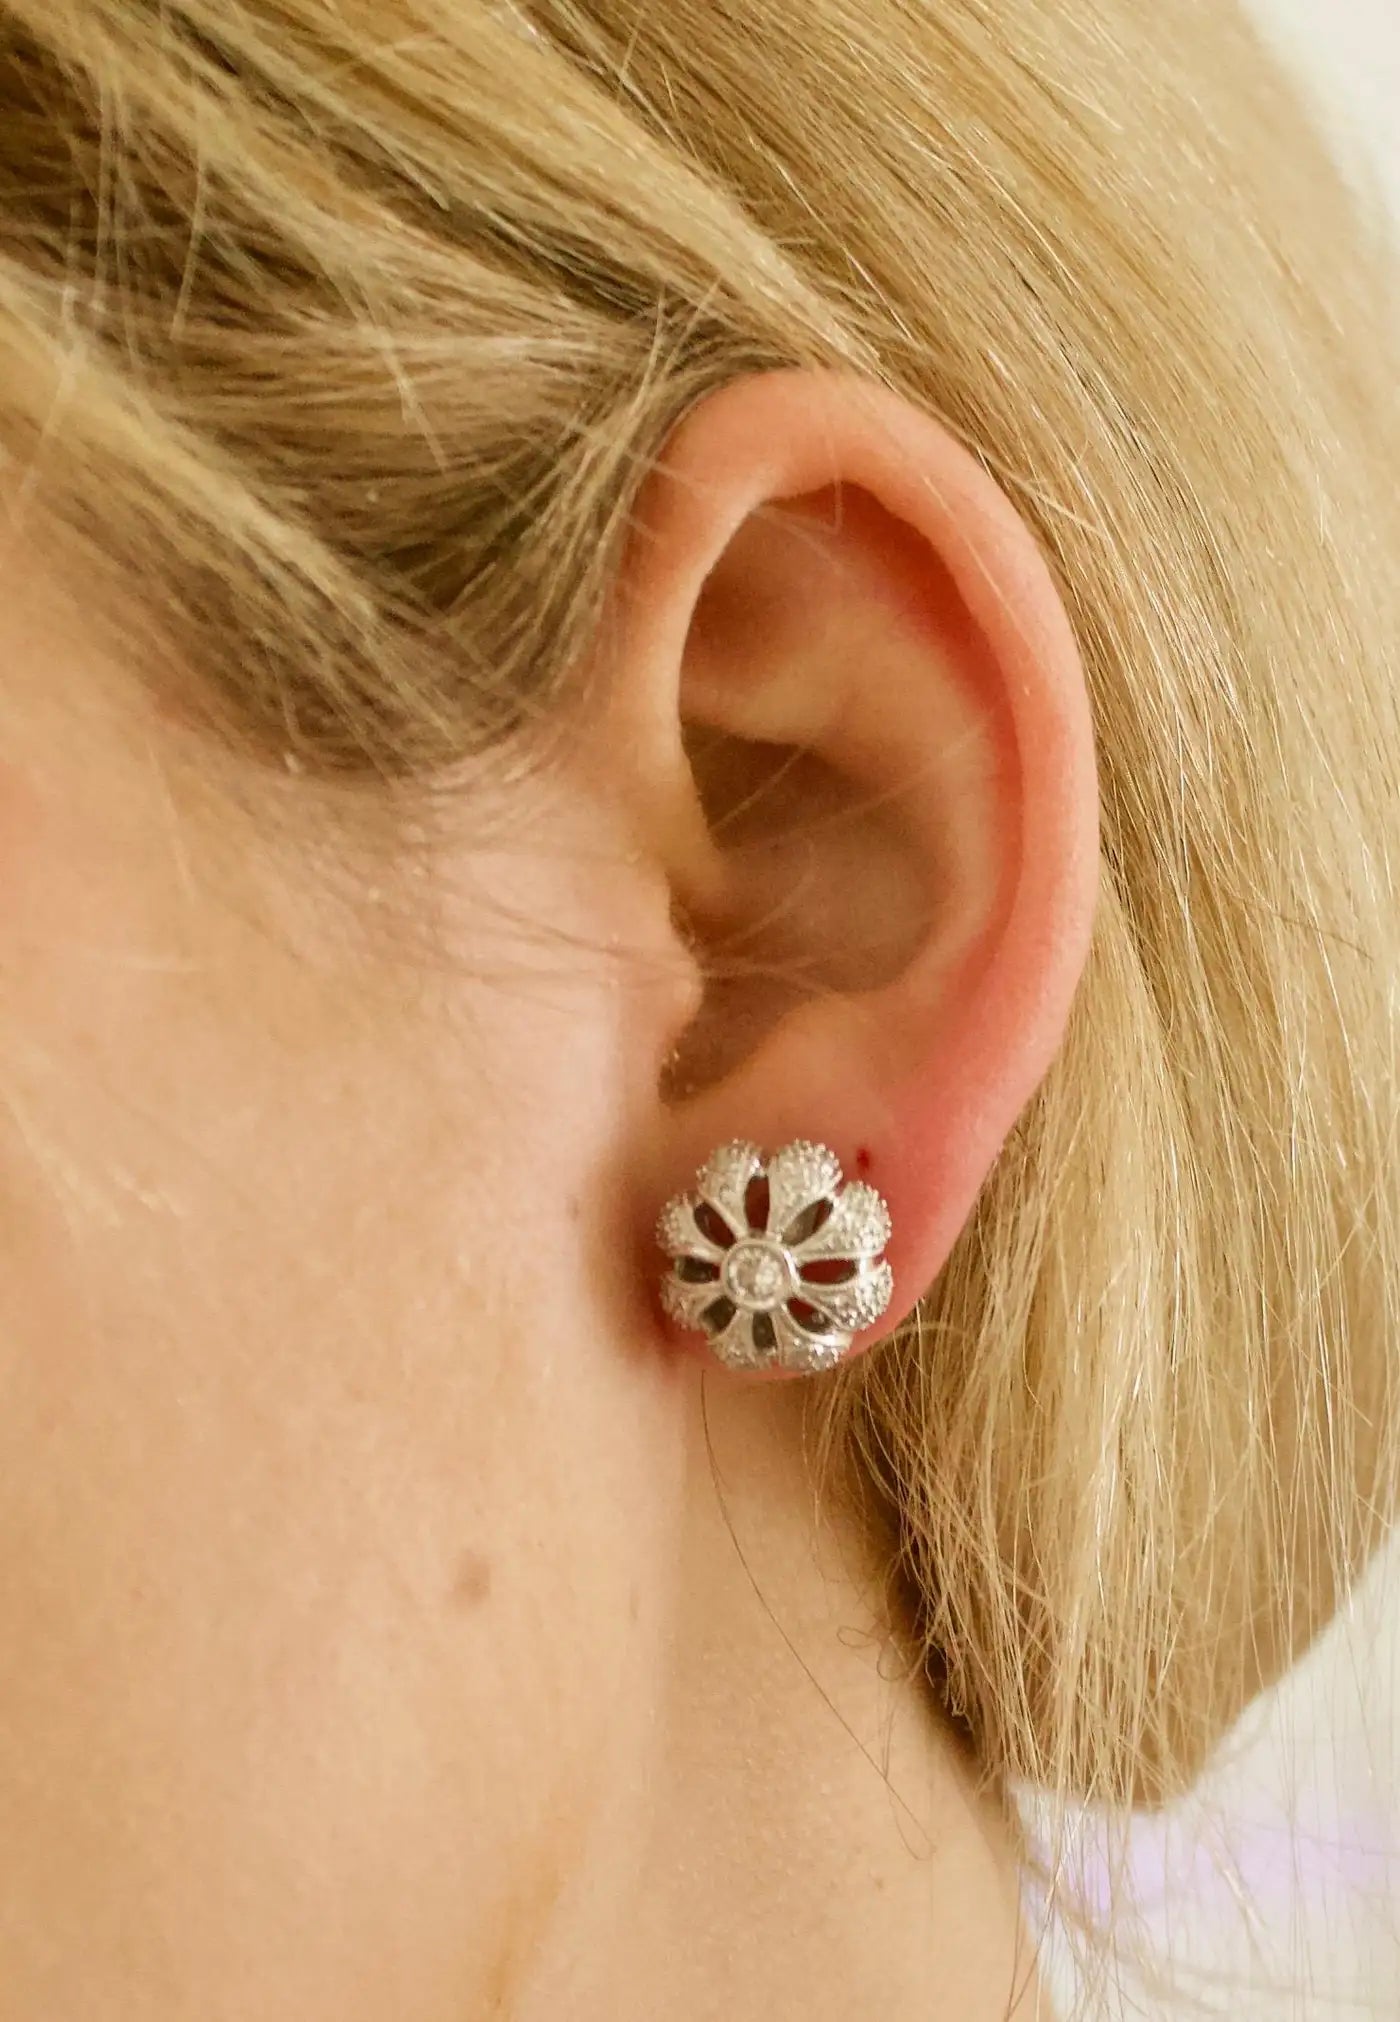 Diamond Floral Earrings in 18k White Gold